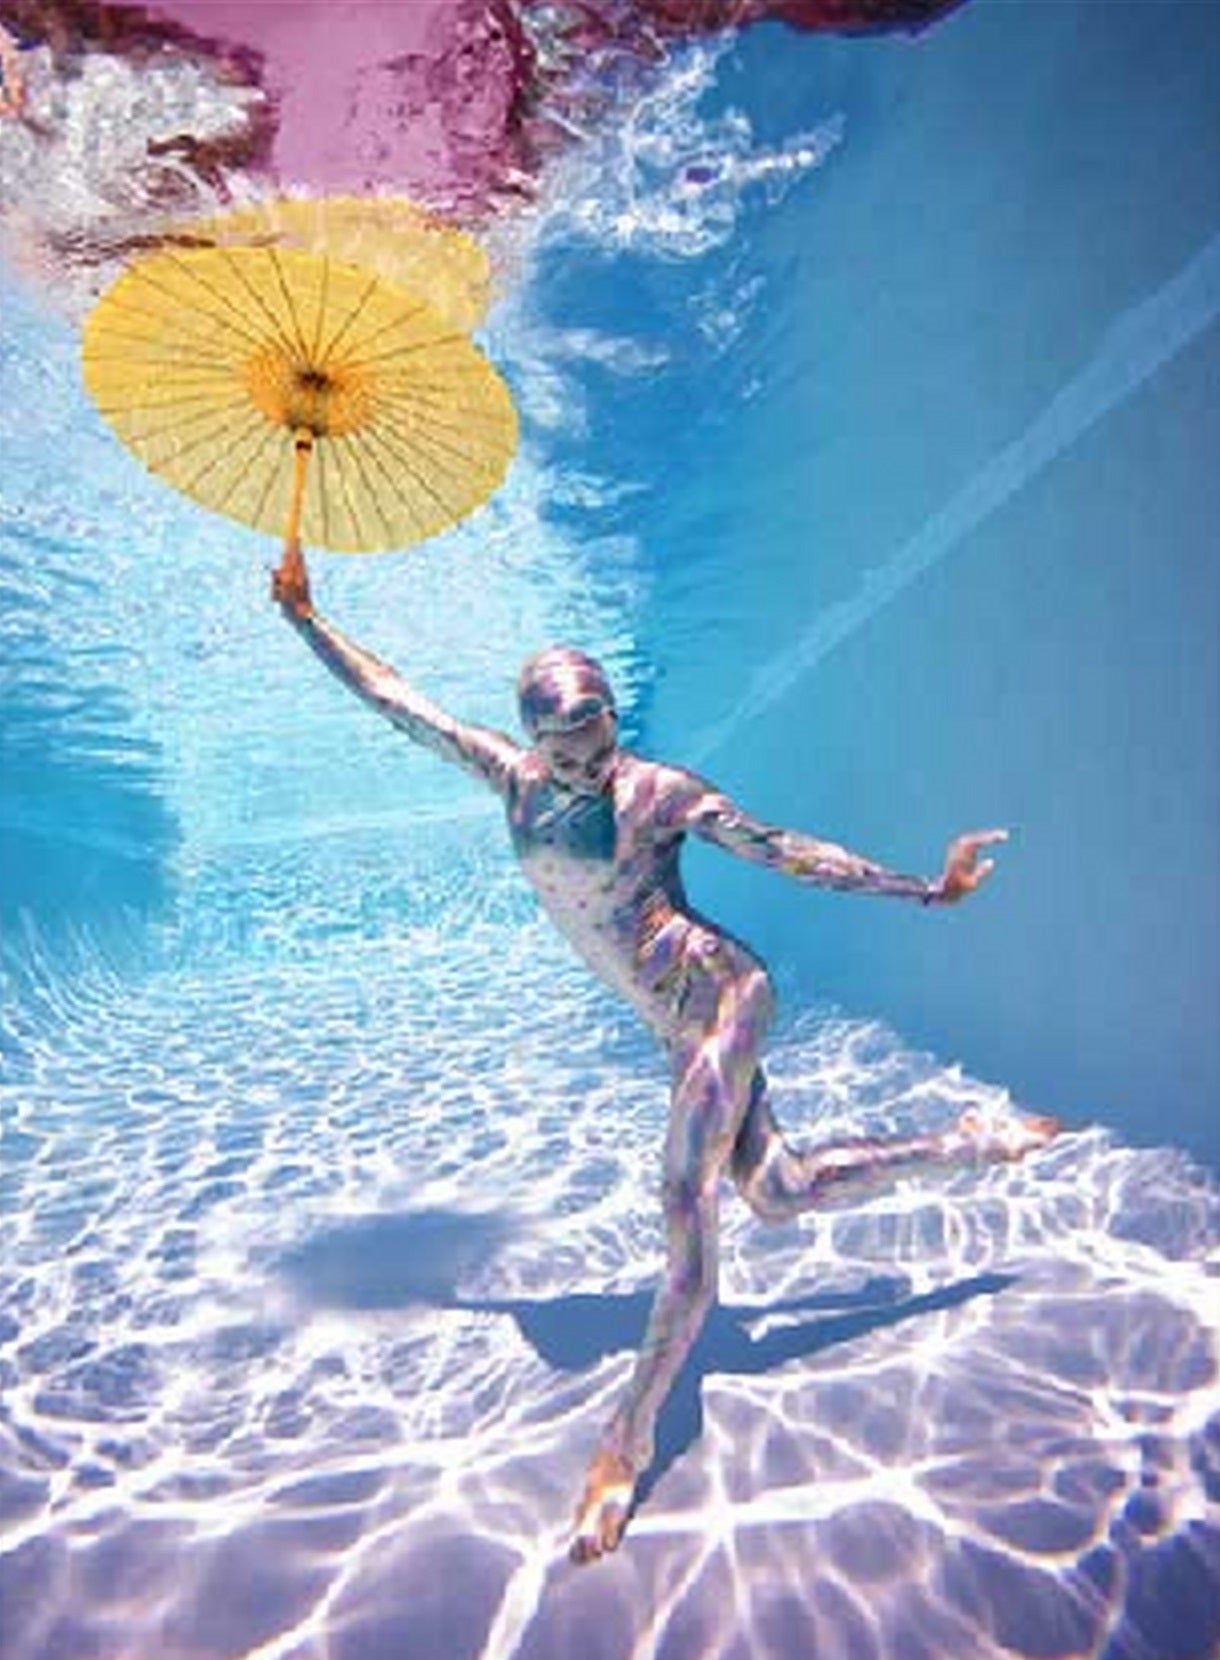 Unterwasser-Studie # 2778 - Modell posiert unter Wasser im Bodysuit mit Regenschirm